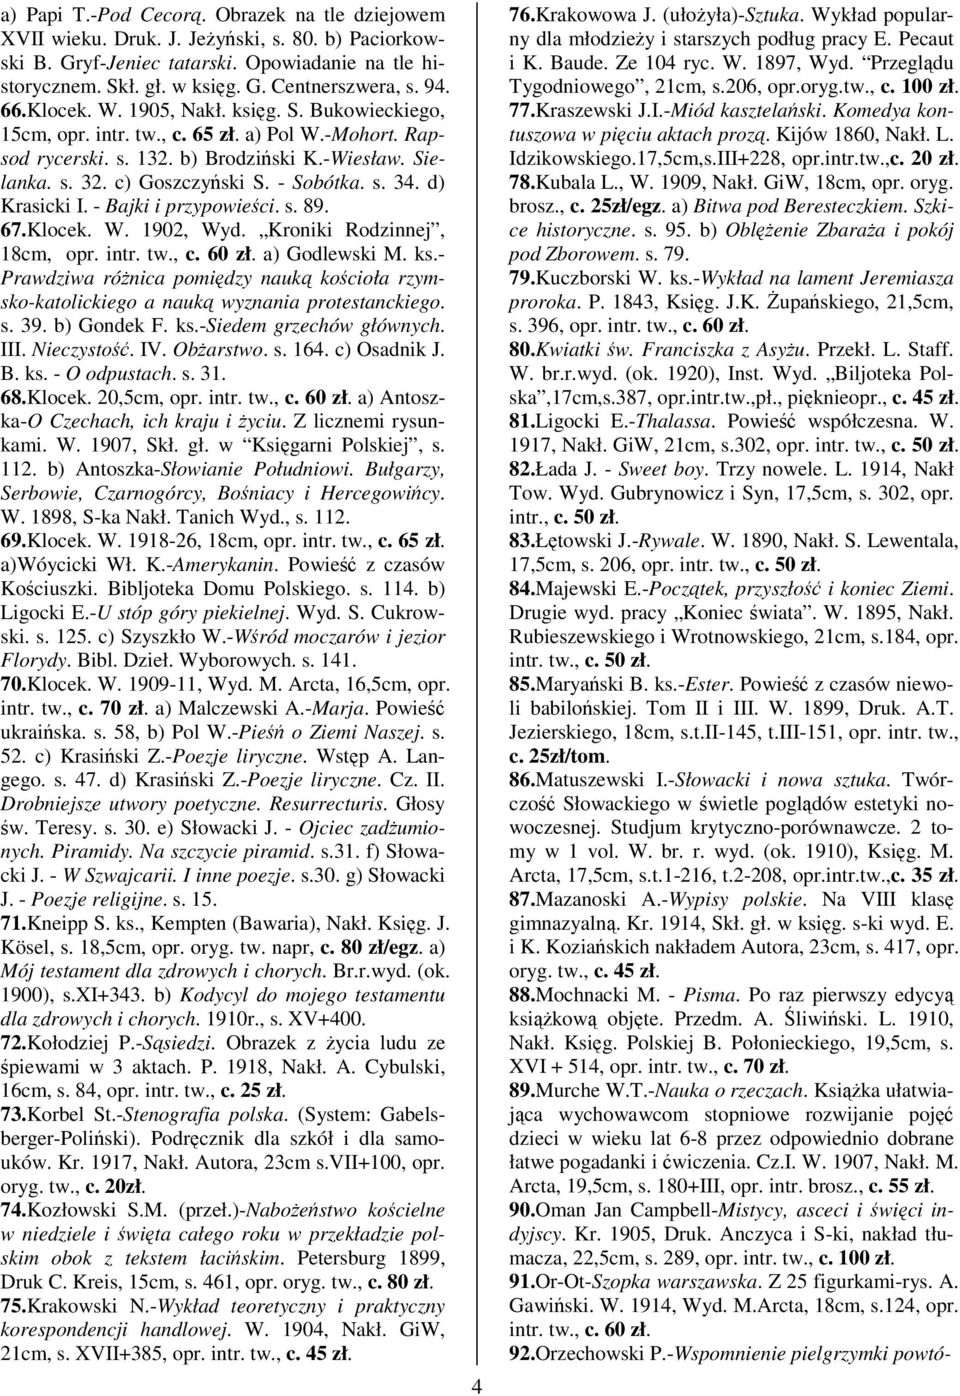 d) Krasicki I. - Bajki i przypowieci. s. 89. 67.Klocek. W. 1902, Wyd. Kroniki Rodzinnej, 18cm, opr. intr. tw., c. 60 zł. a) Godlewski M. ks.